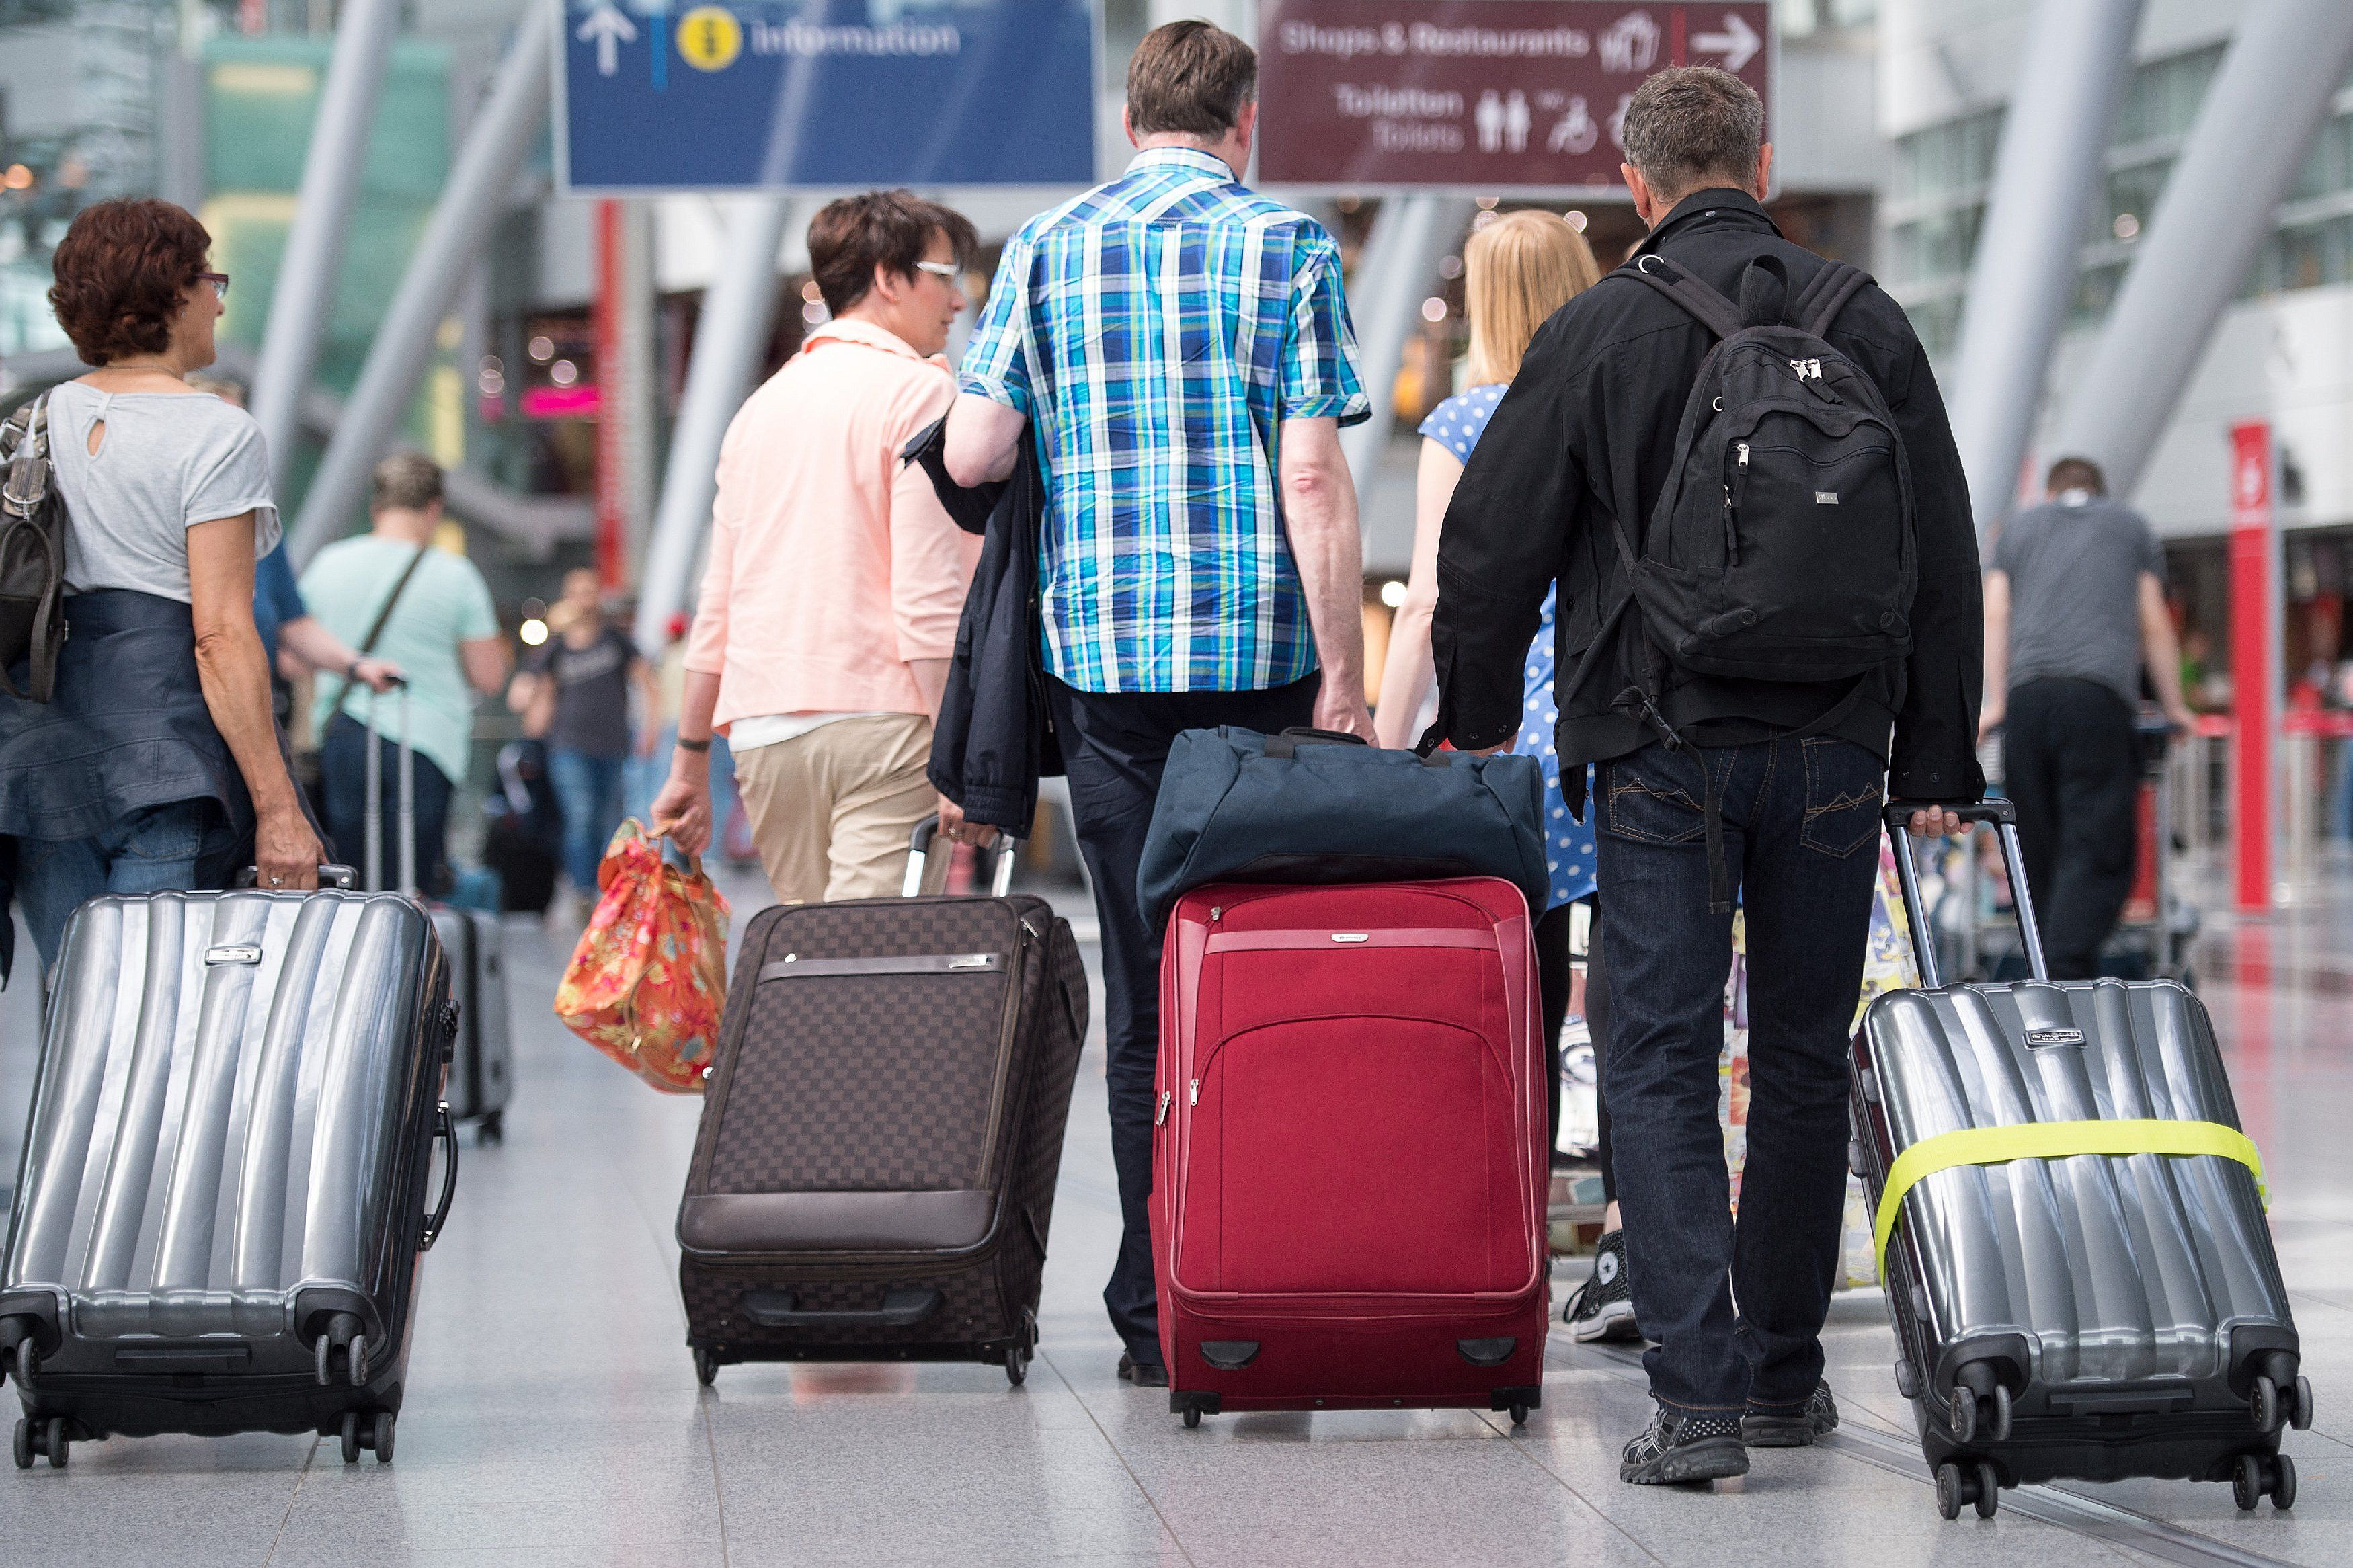 Выезд населения. Люди с чемоданами в аэропорту. Человек с чемоданом. Эмиграция. Отток населения.